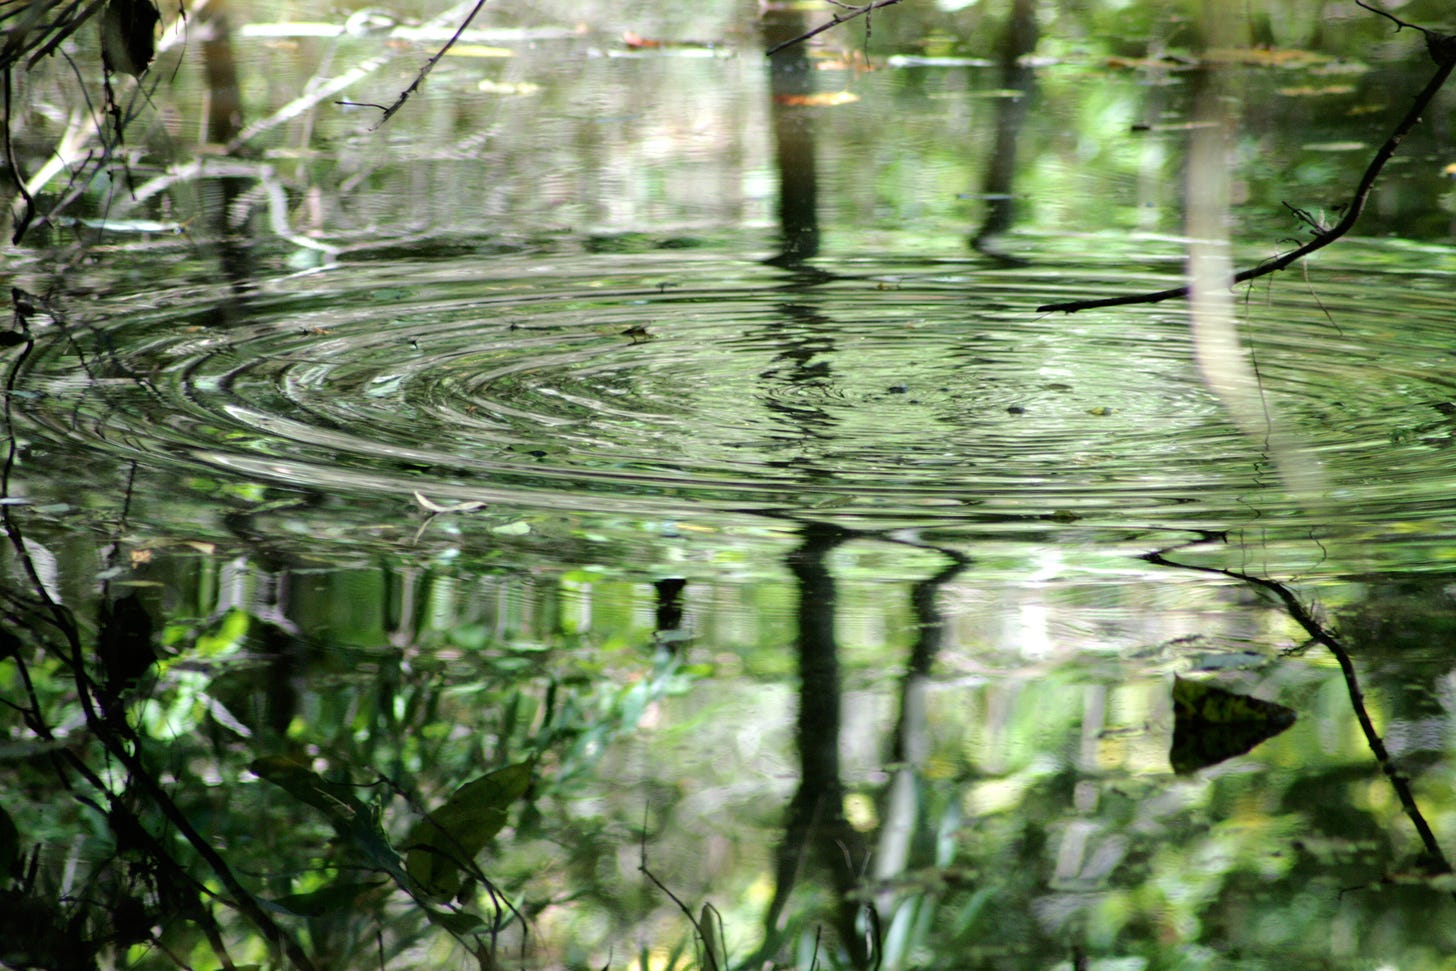 Circular ripple in pond.